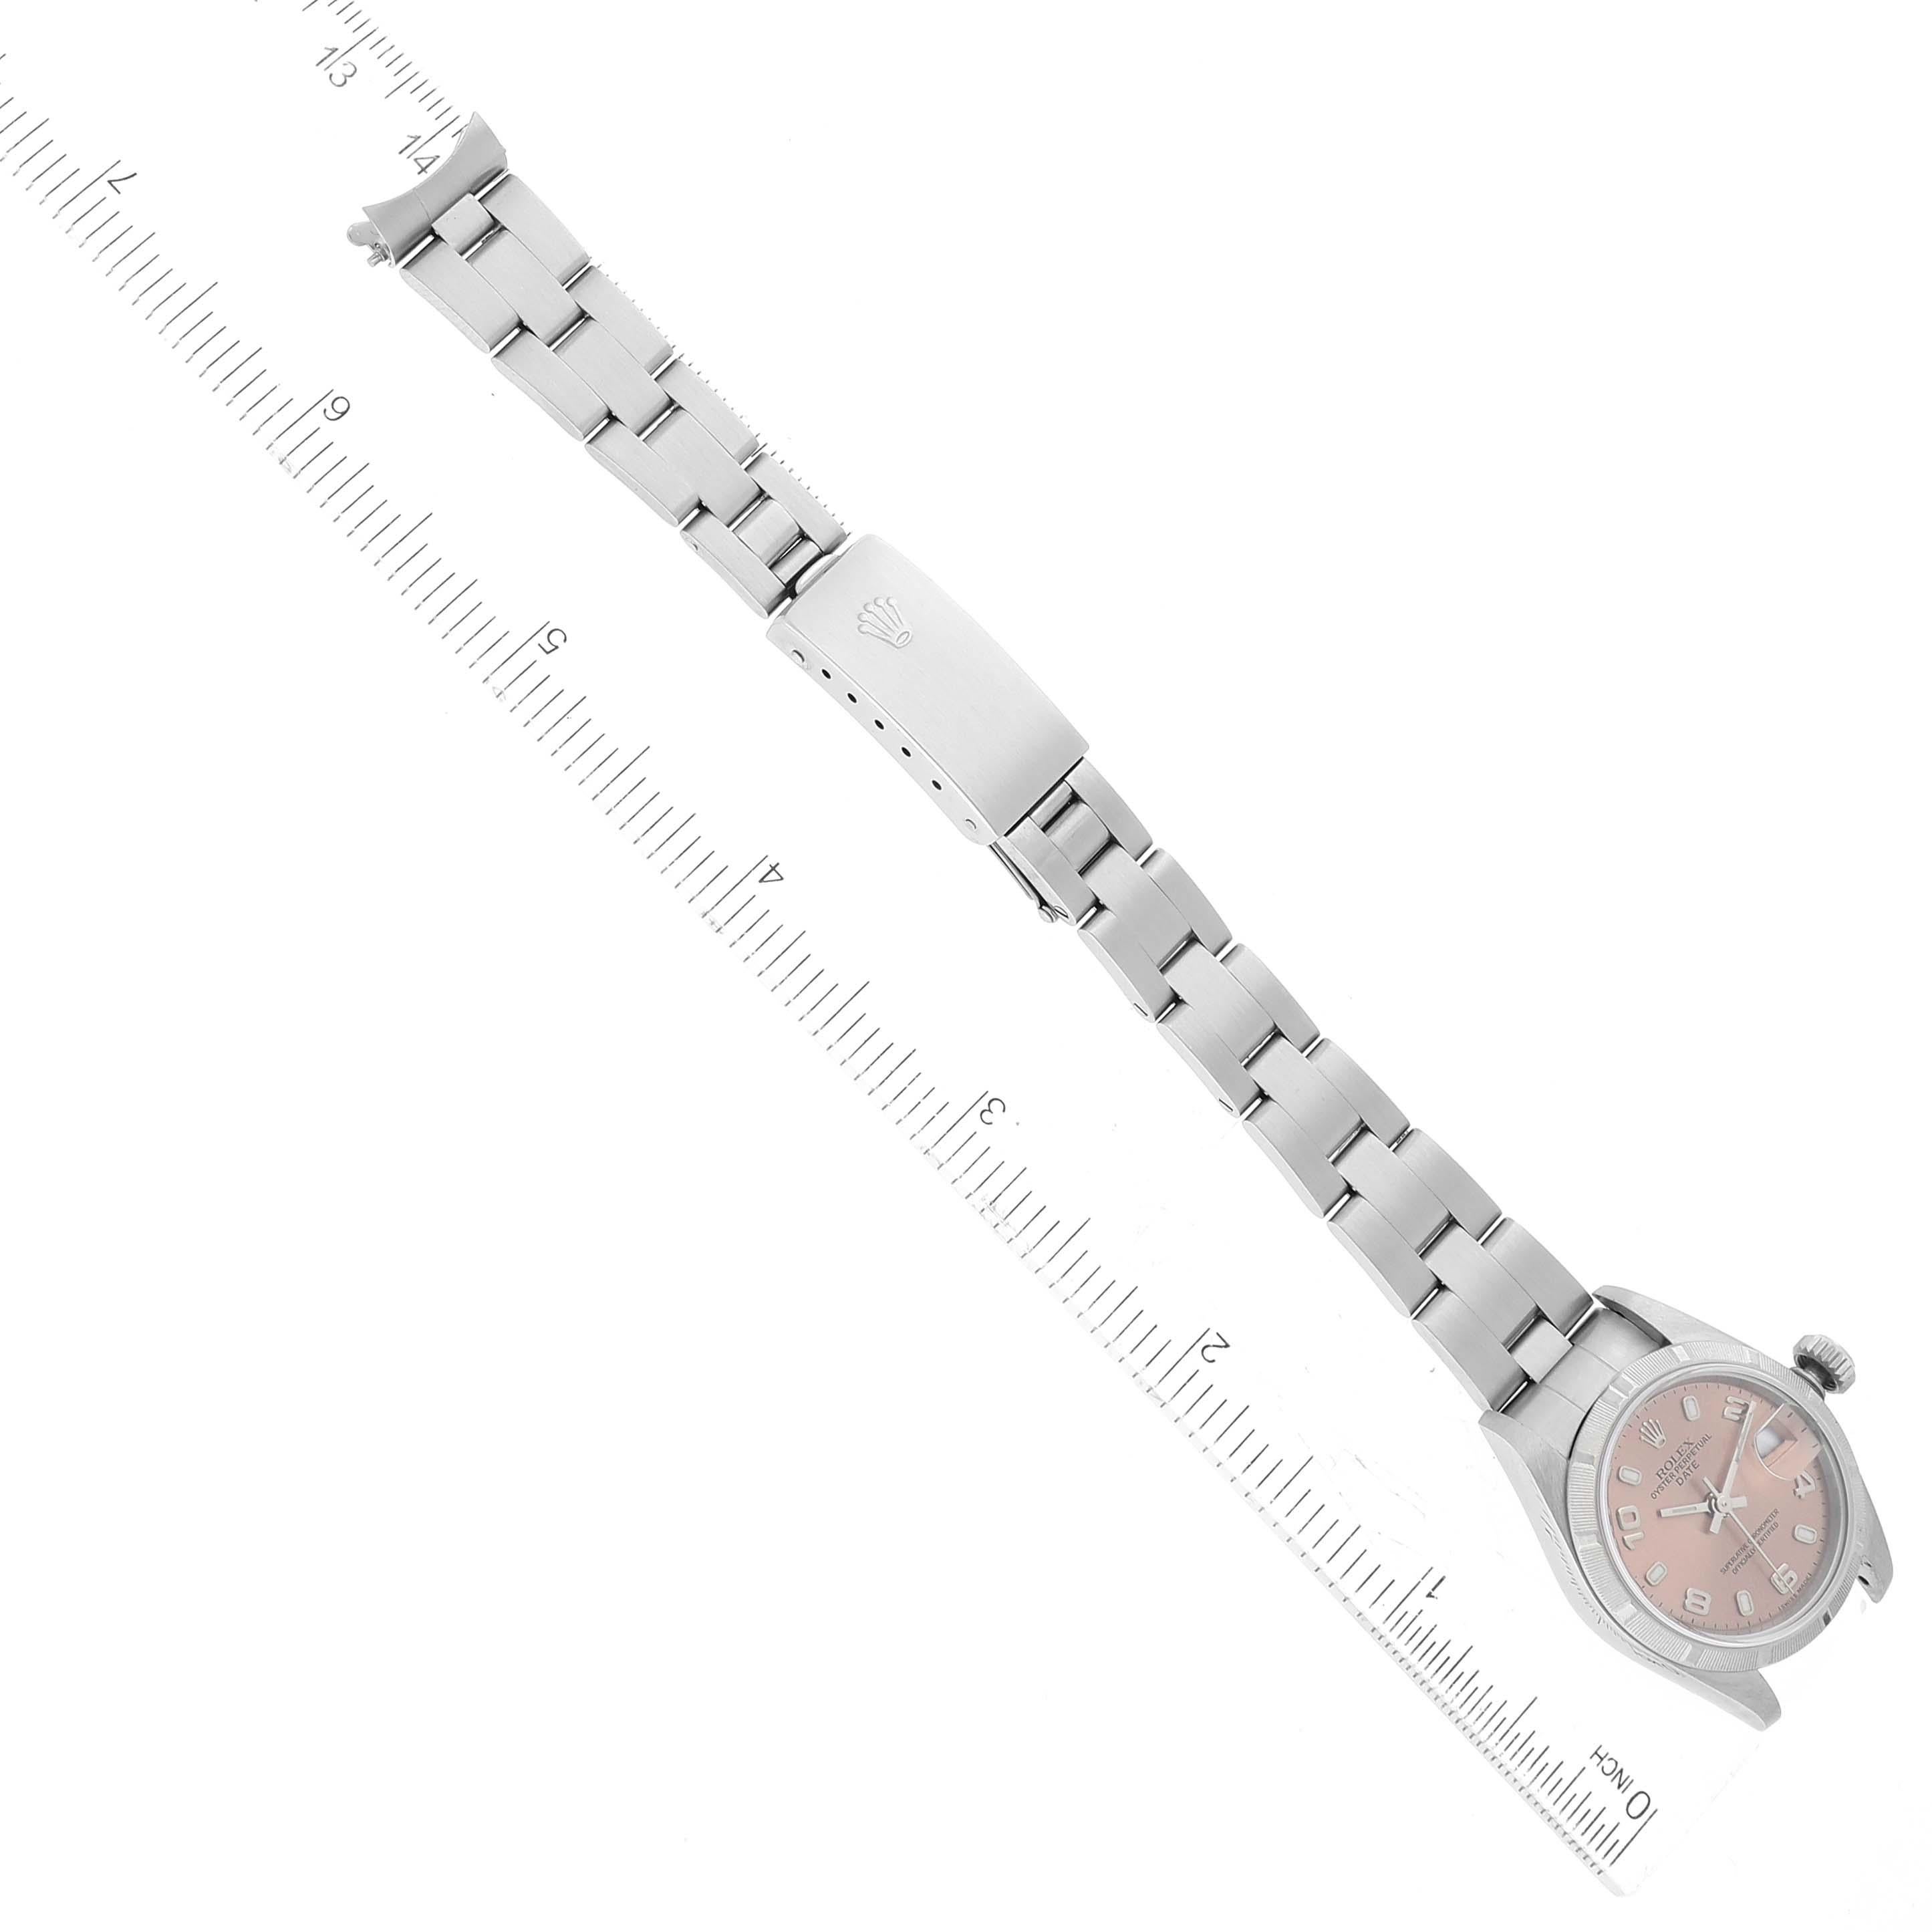 Rolex Date Salmon Dial Oyster Bracelet Steel Ladies Watch 79190 6